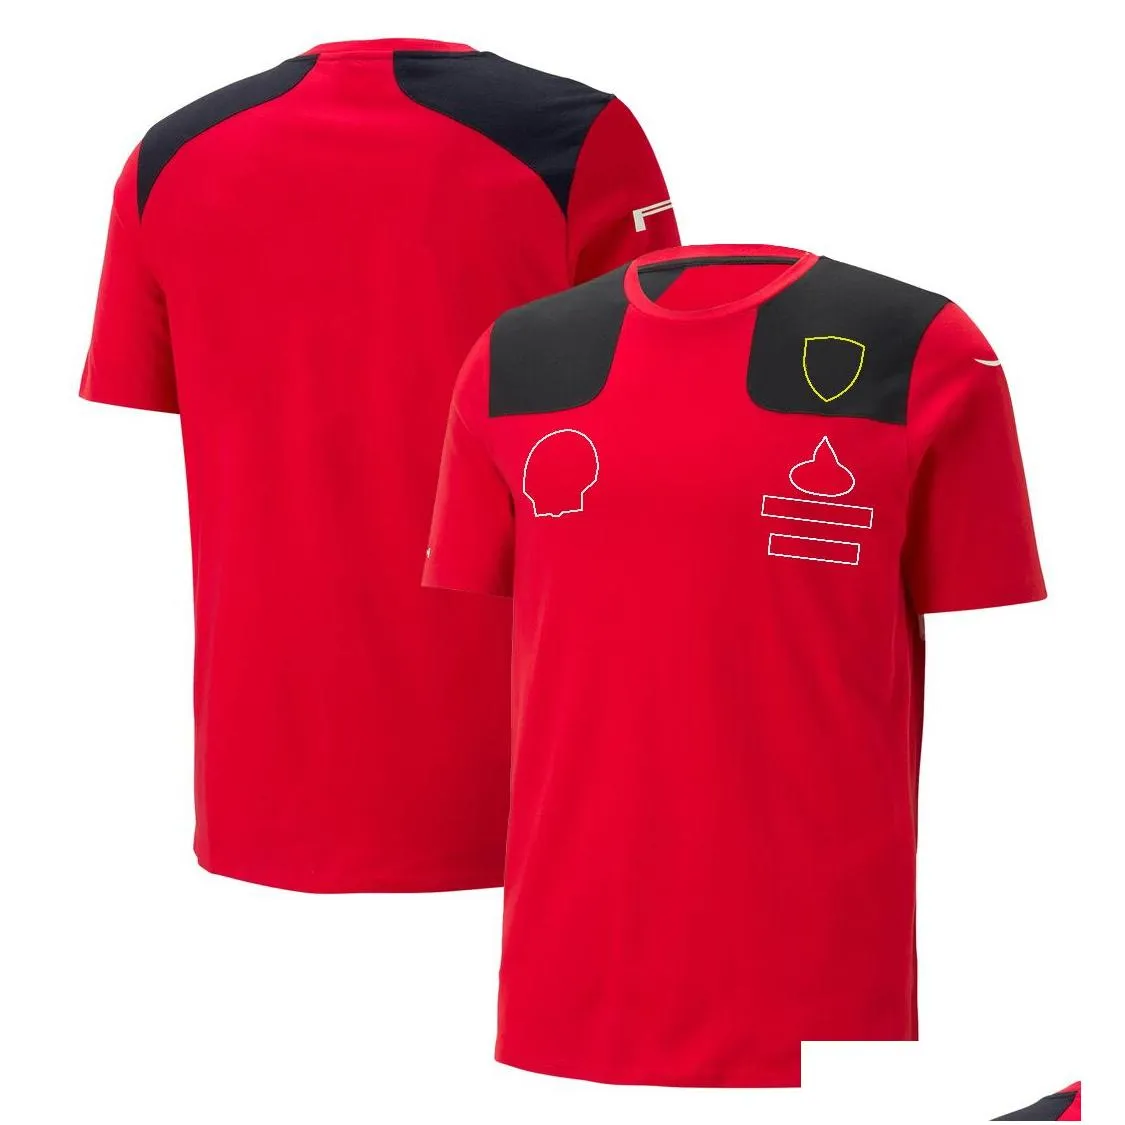 القمصان الجديدة للرجال والسيدات ، فورمولا واحد F1 polo الملابس العلوية للدراجات النارية ، وأكثر منتجات السباق Red Forma Red Team Suit Abel Clother